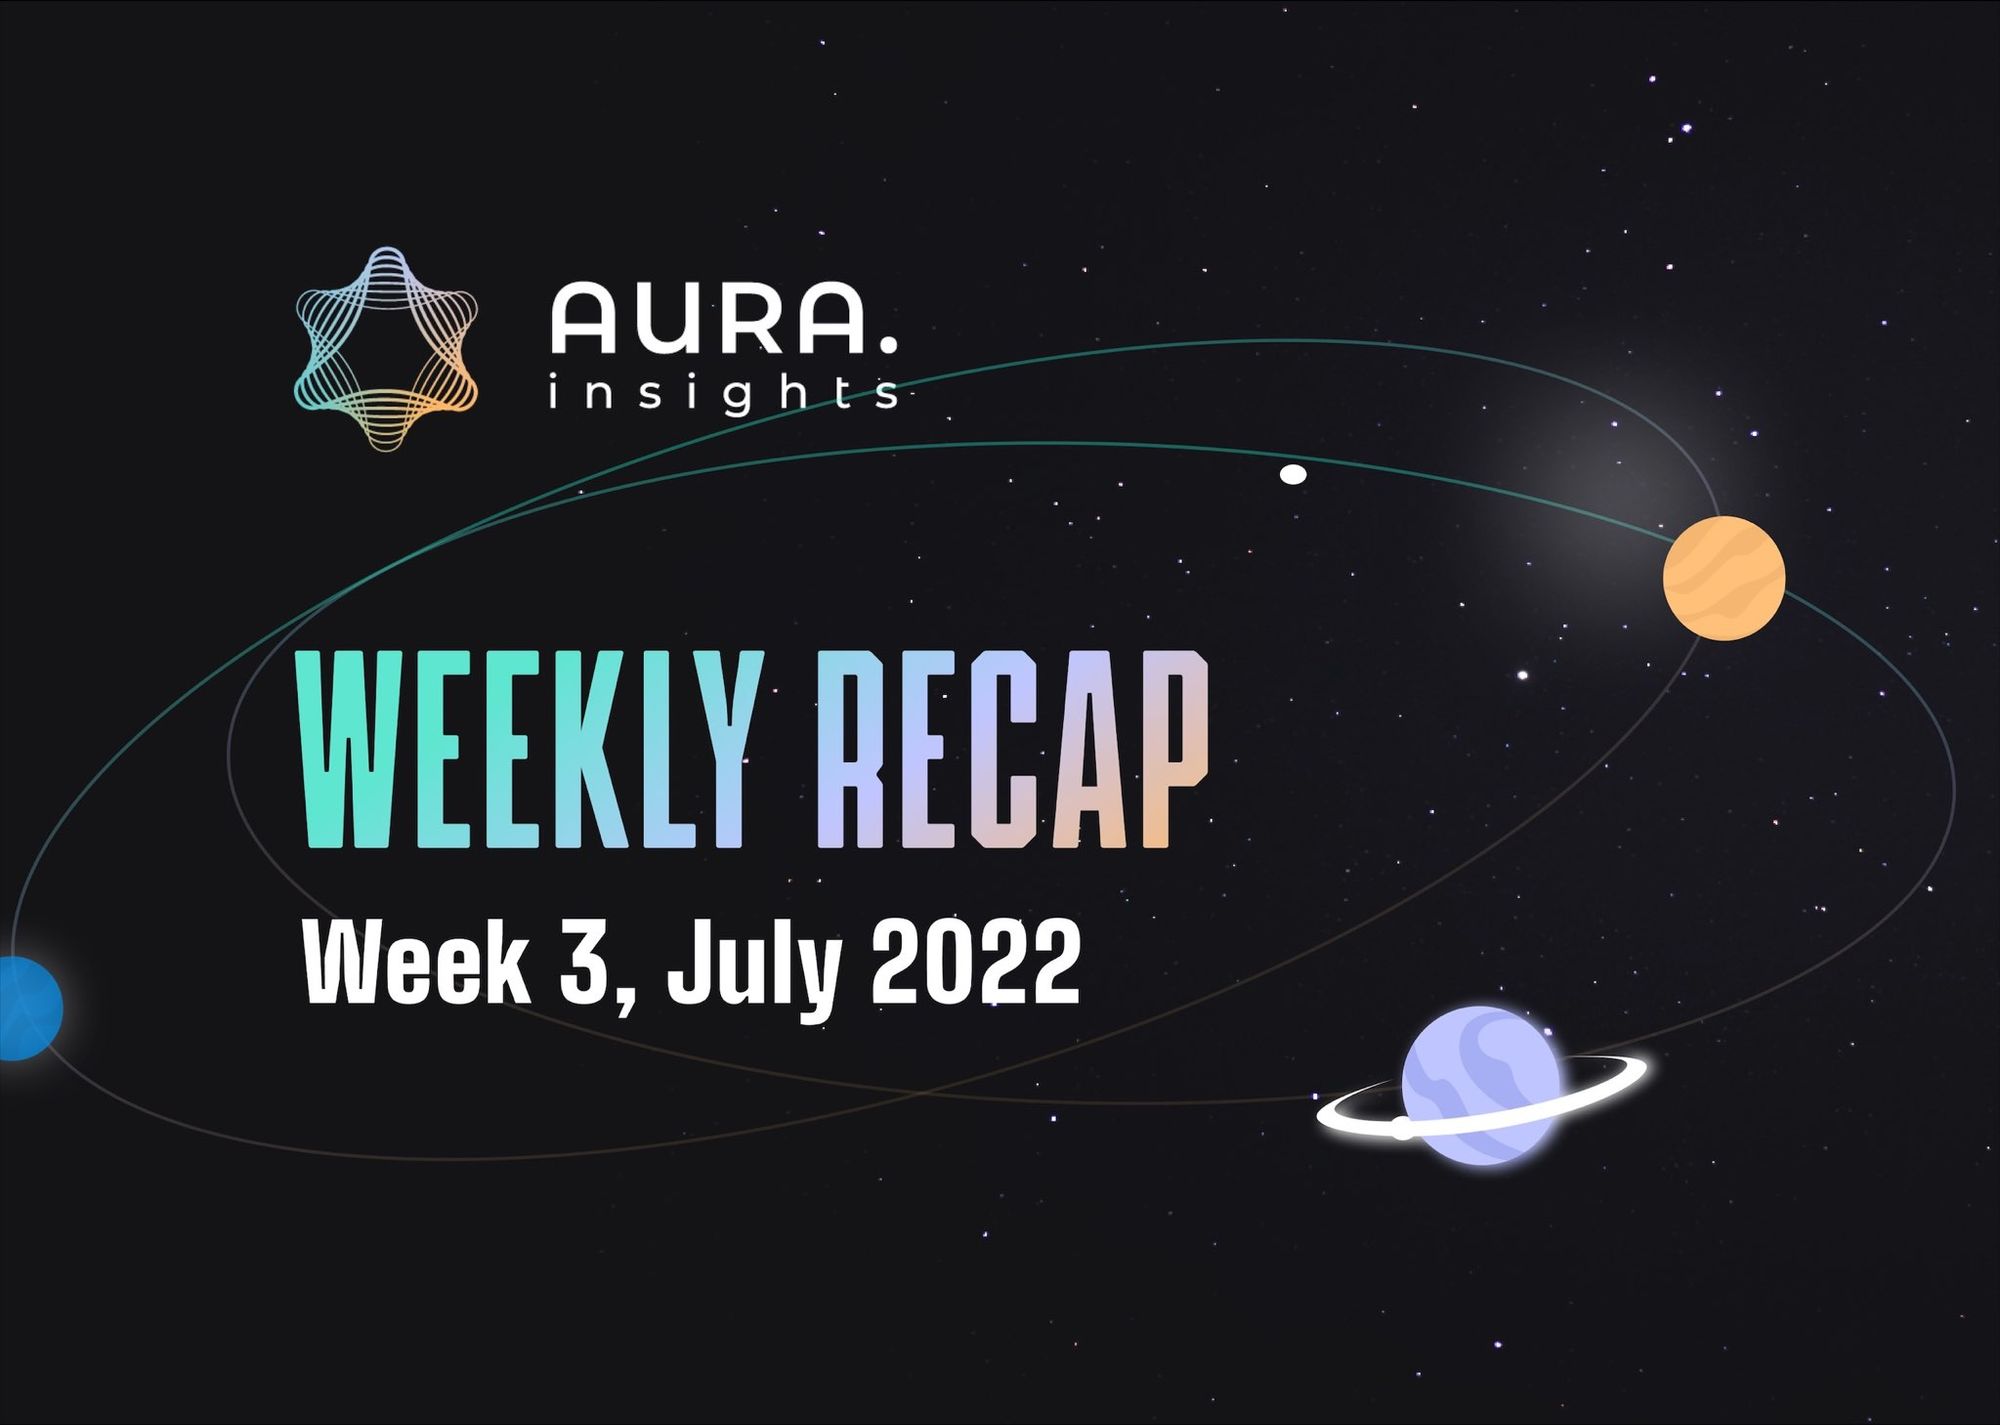 AURA WEEKLY RECAP #3 - WEEK 3, JULY